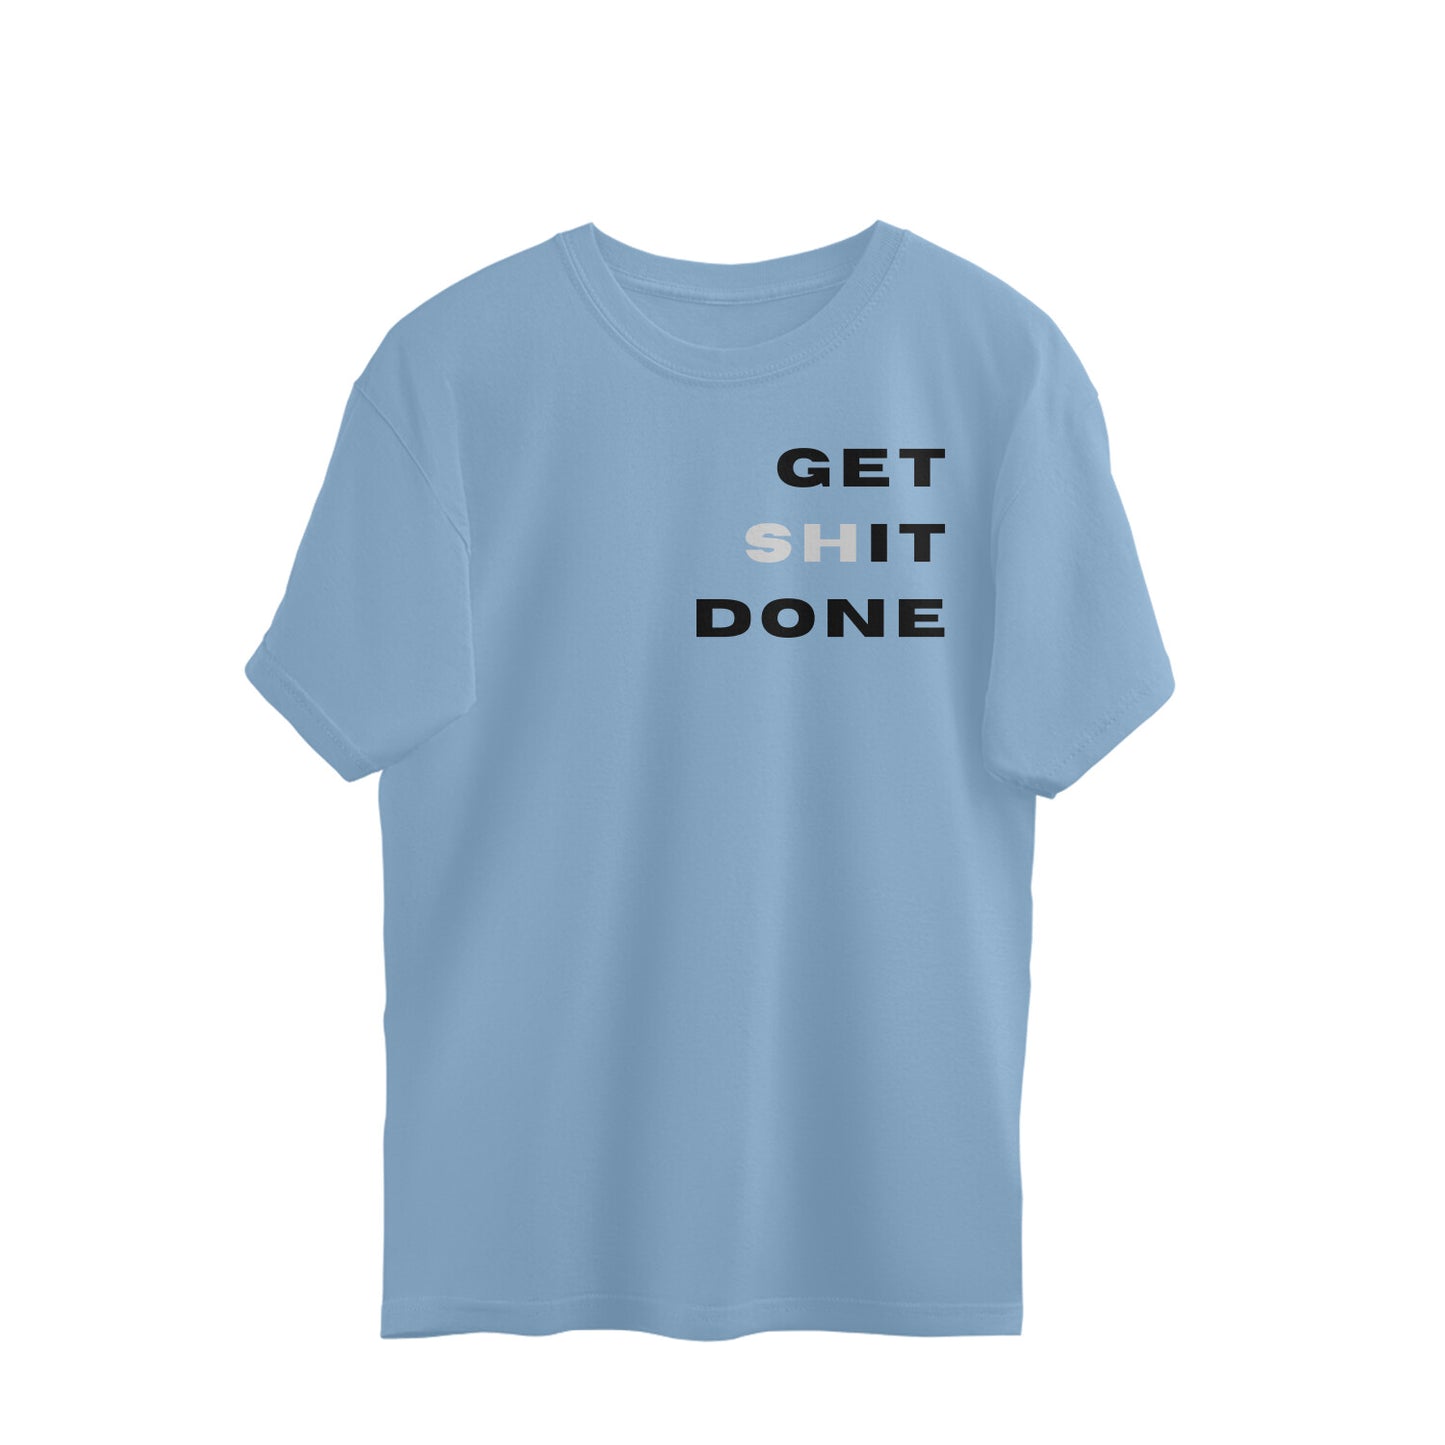 Get Shit Done - Oversized Unisex Tshirt